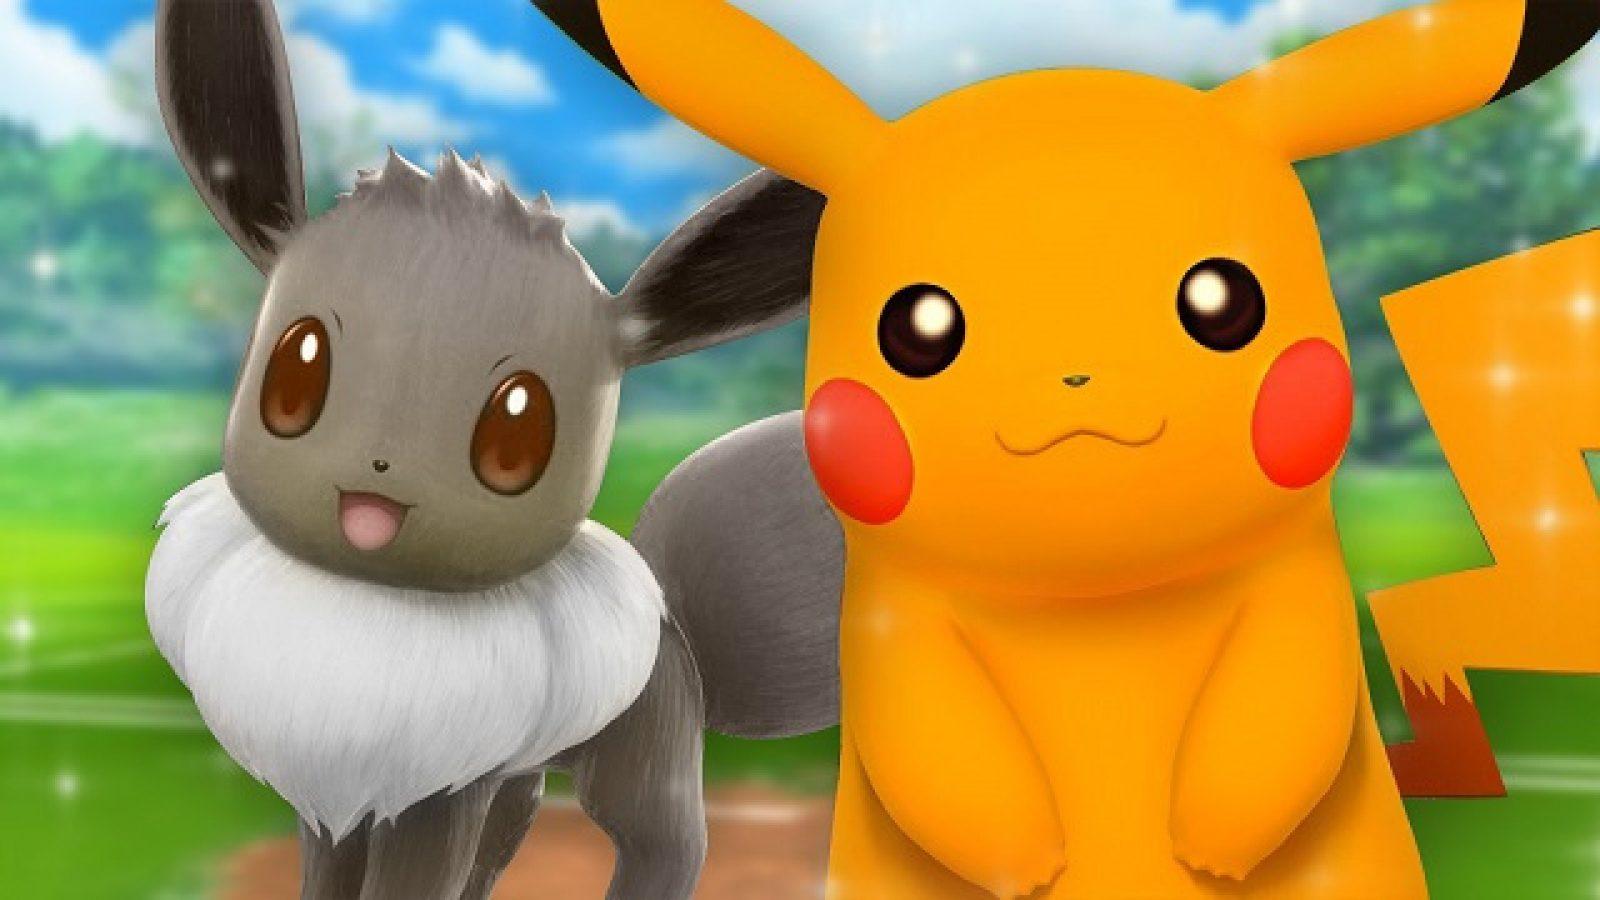 Pokemon Go: How to Catch Shiny Pikachu